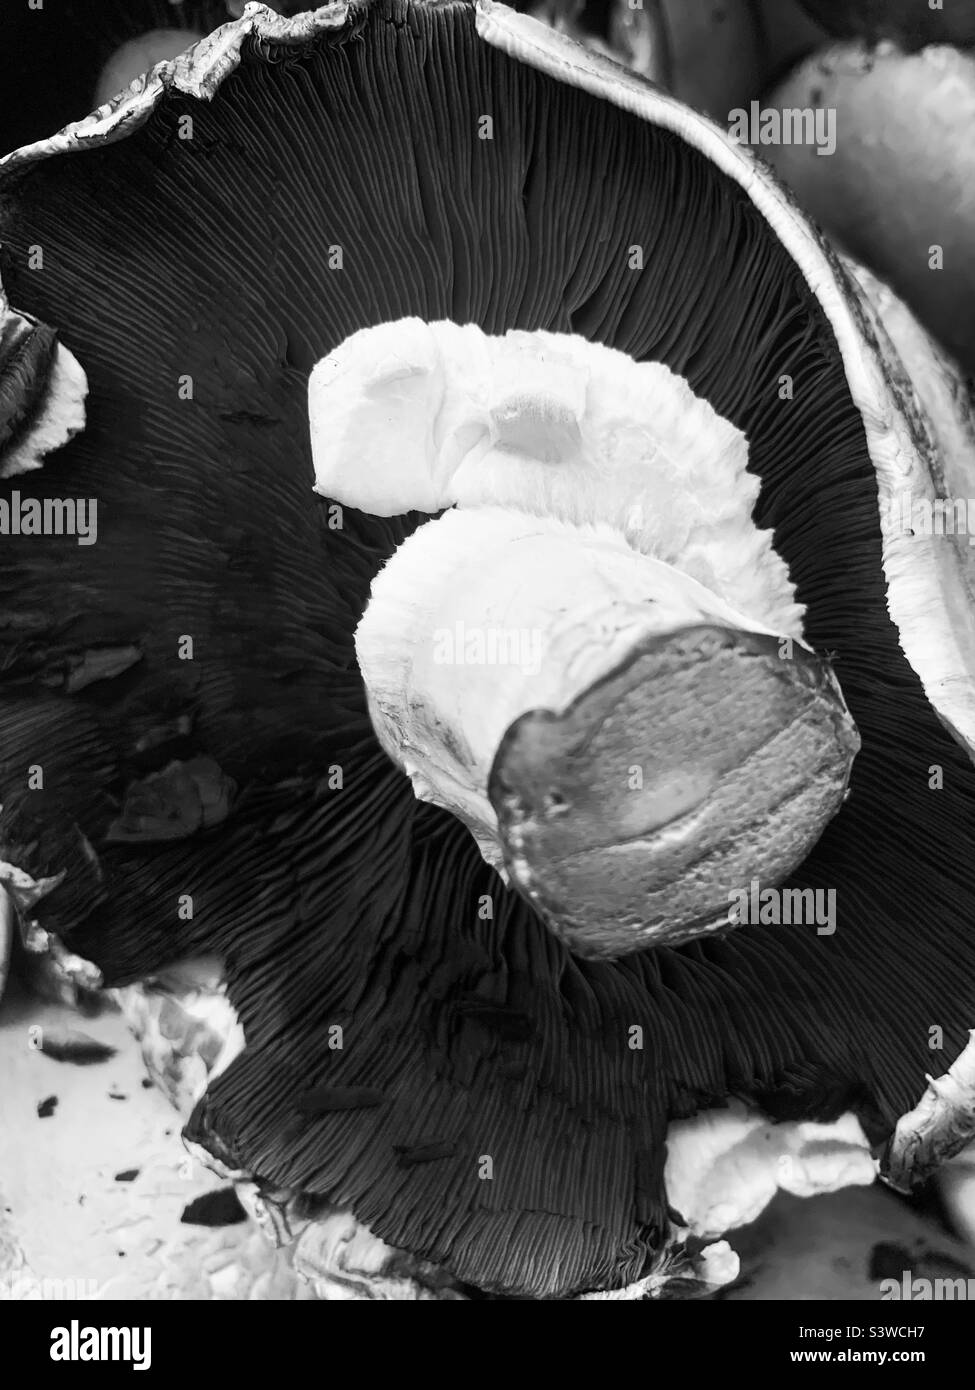 El fondo de una enorme seta portobello con tallo y tapa en blanco y negro. Foto de stock